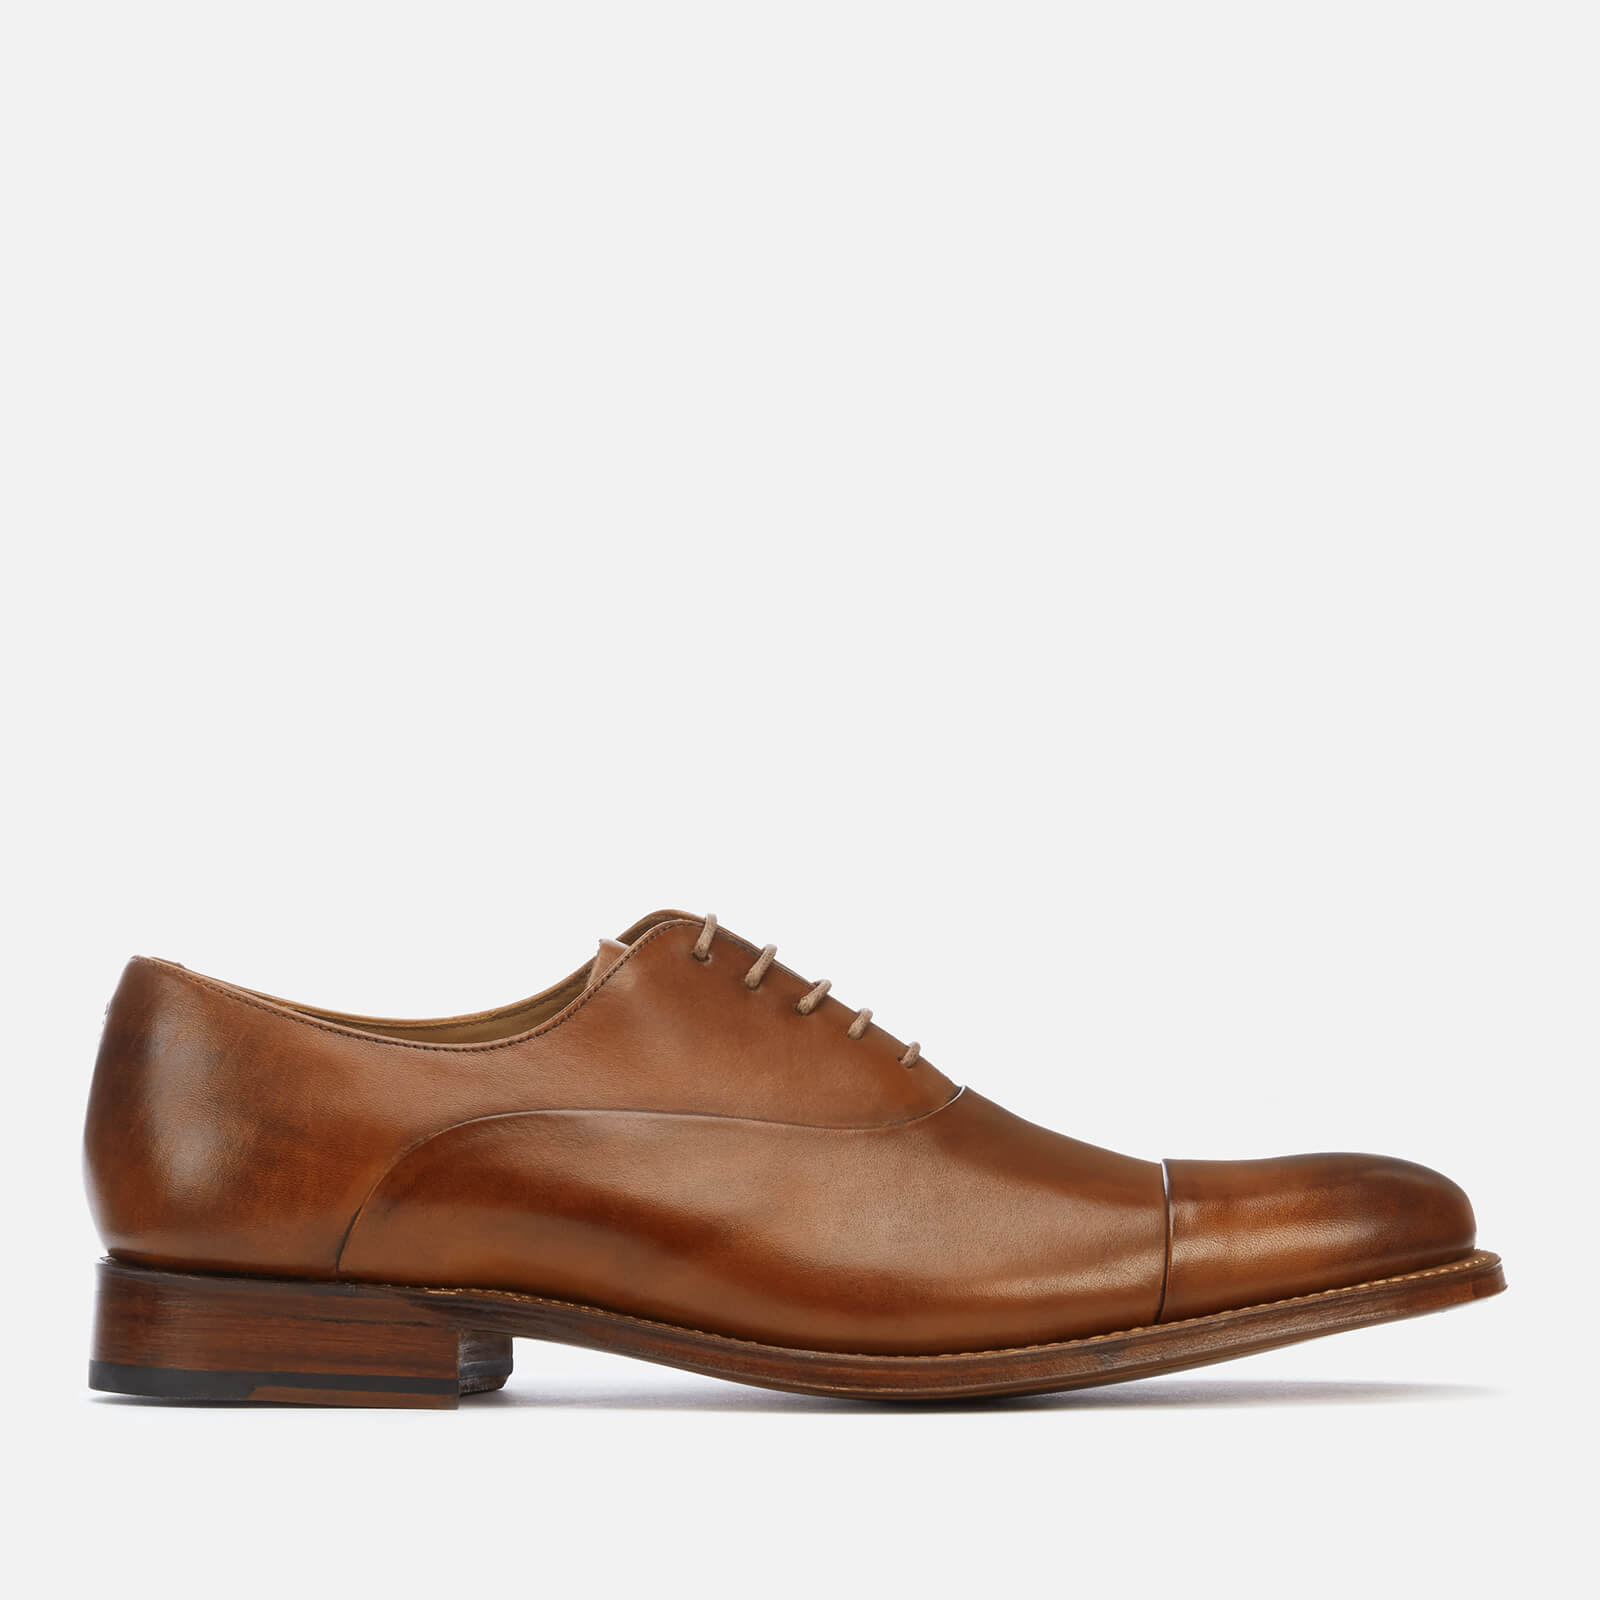 Grenson Men's Bert Hand Painted Leather Toe Cap Oxford Shoes - Tan - UK 7 - Tan